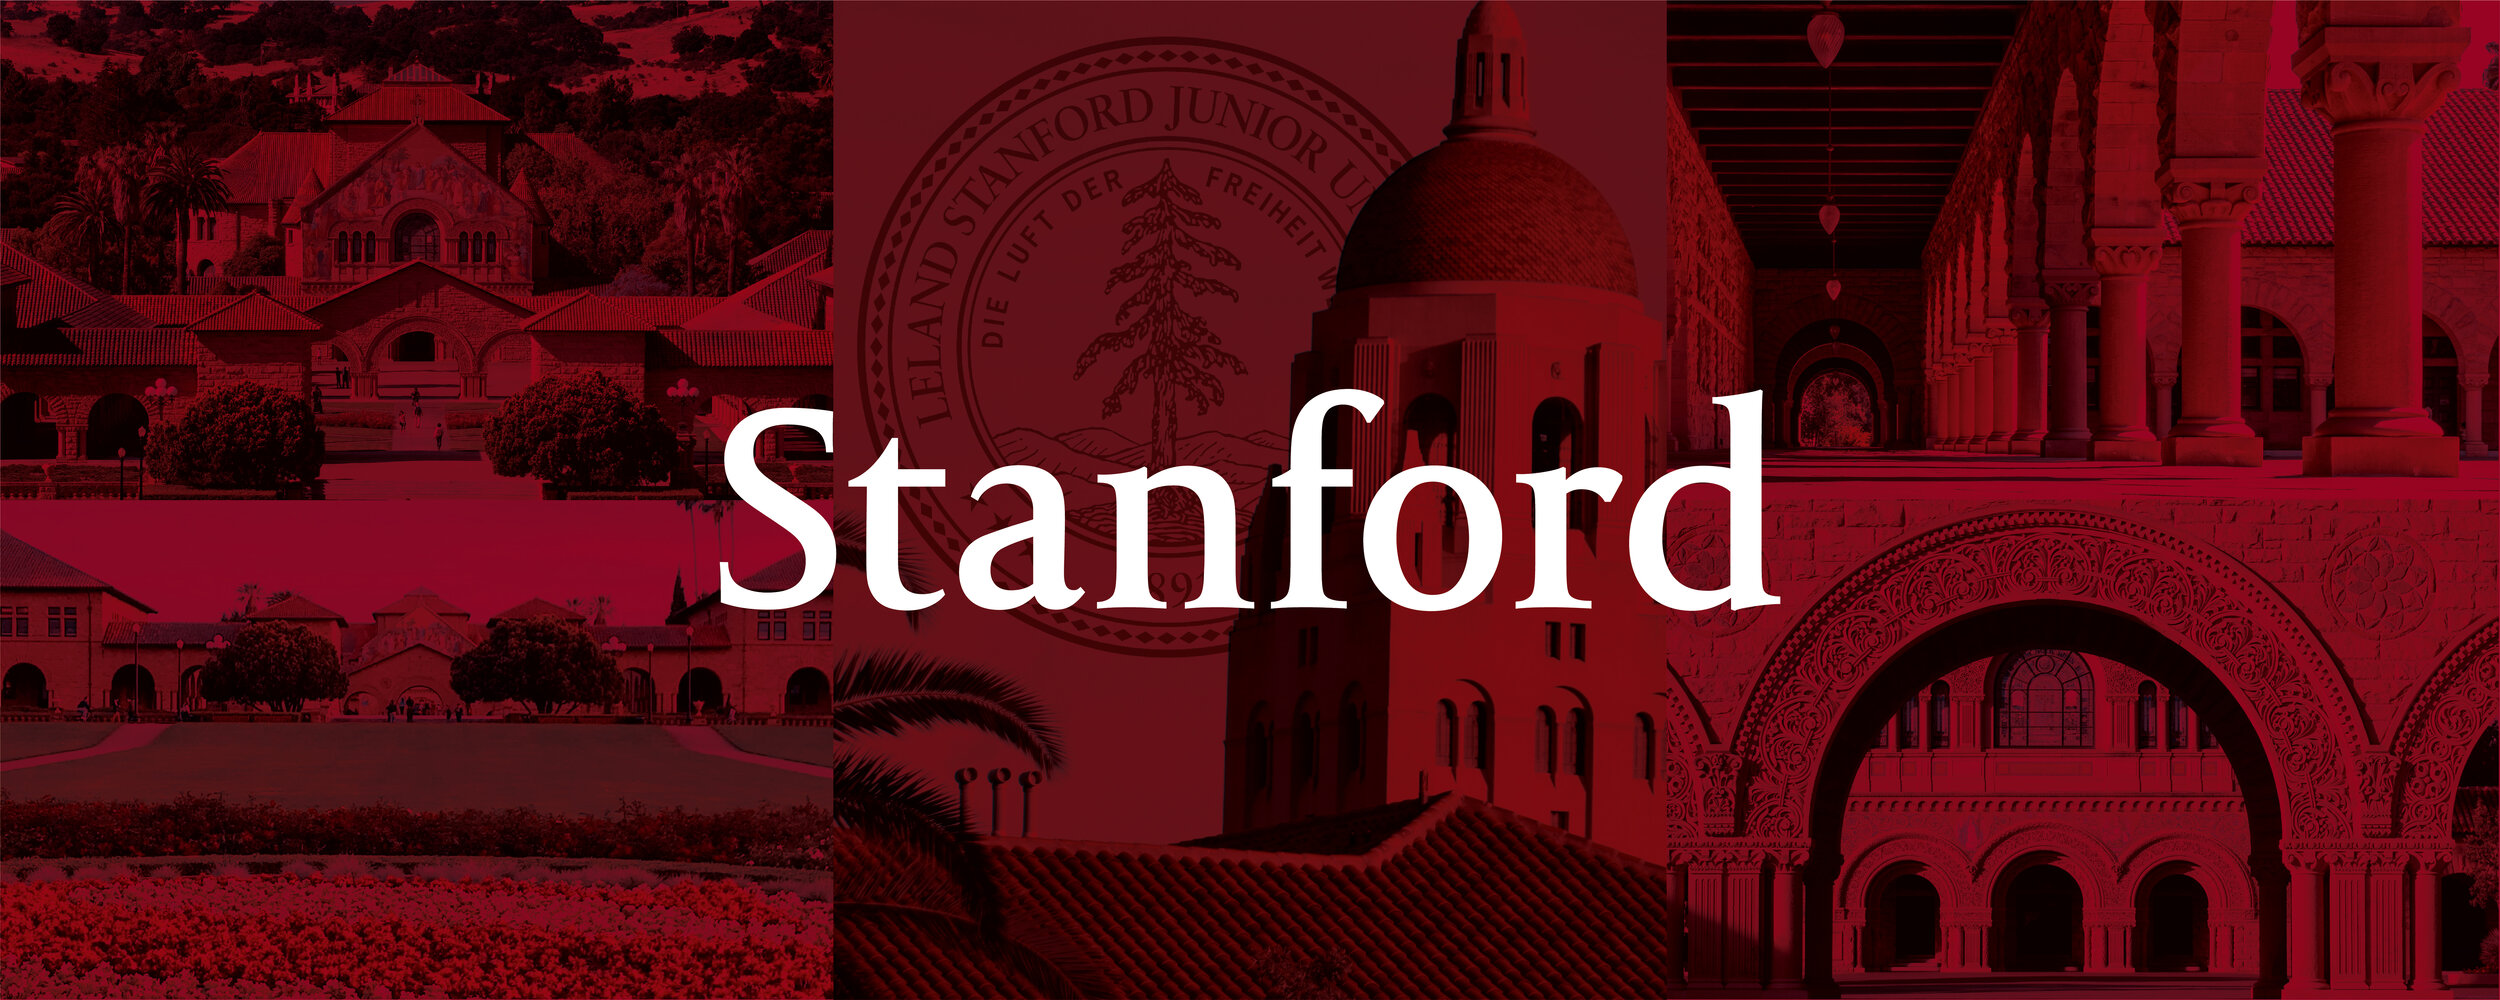 Stanford_Web-01.jpg